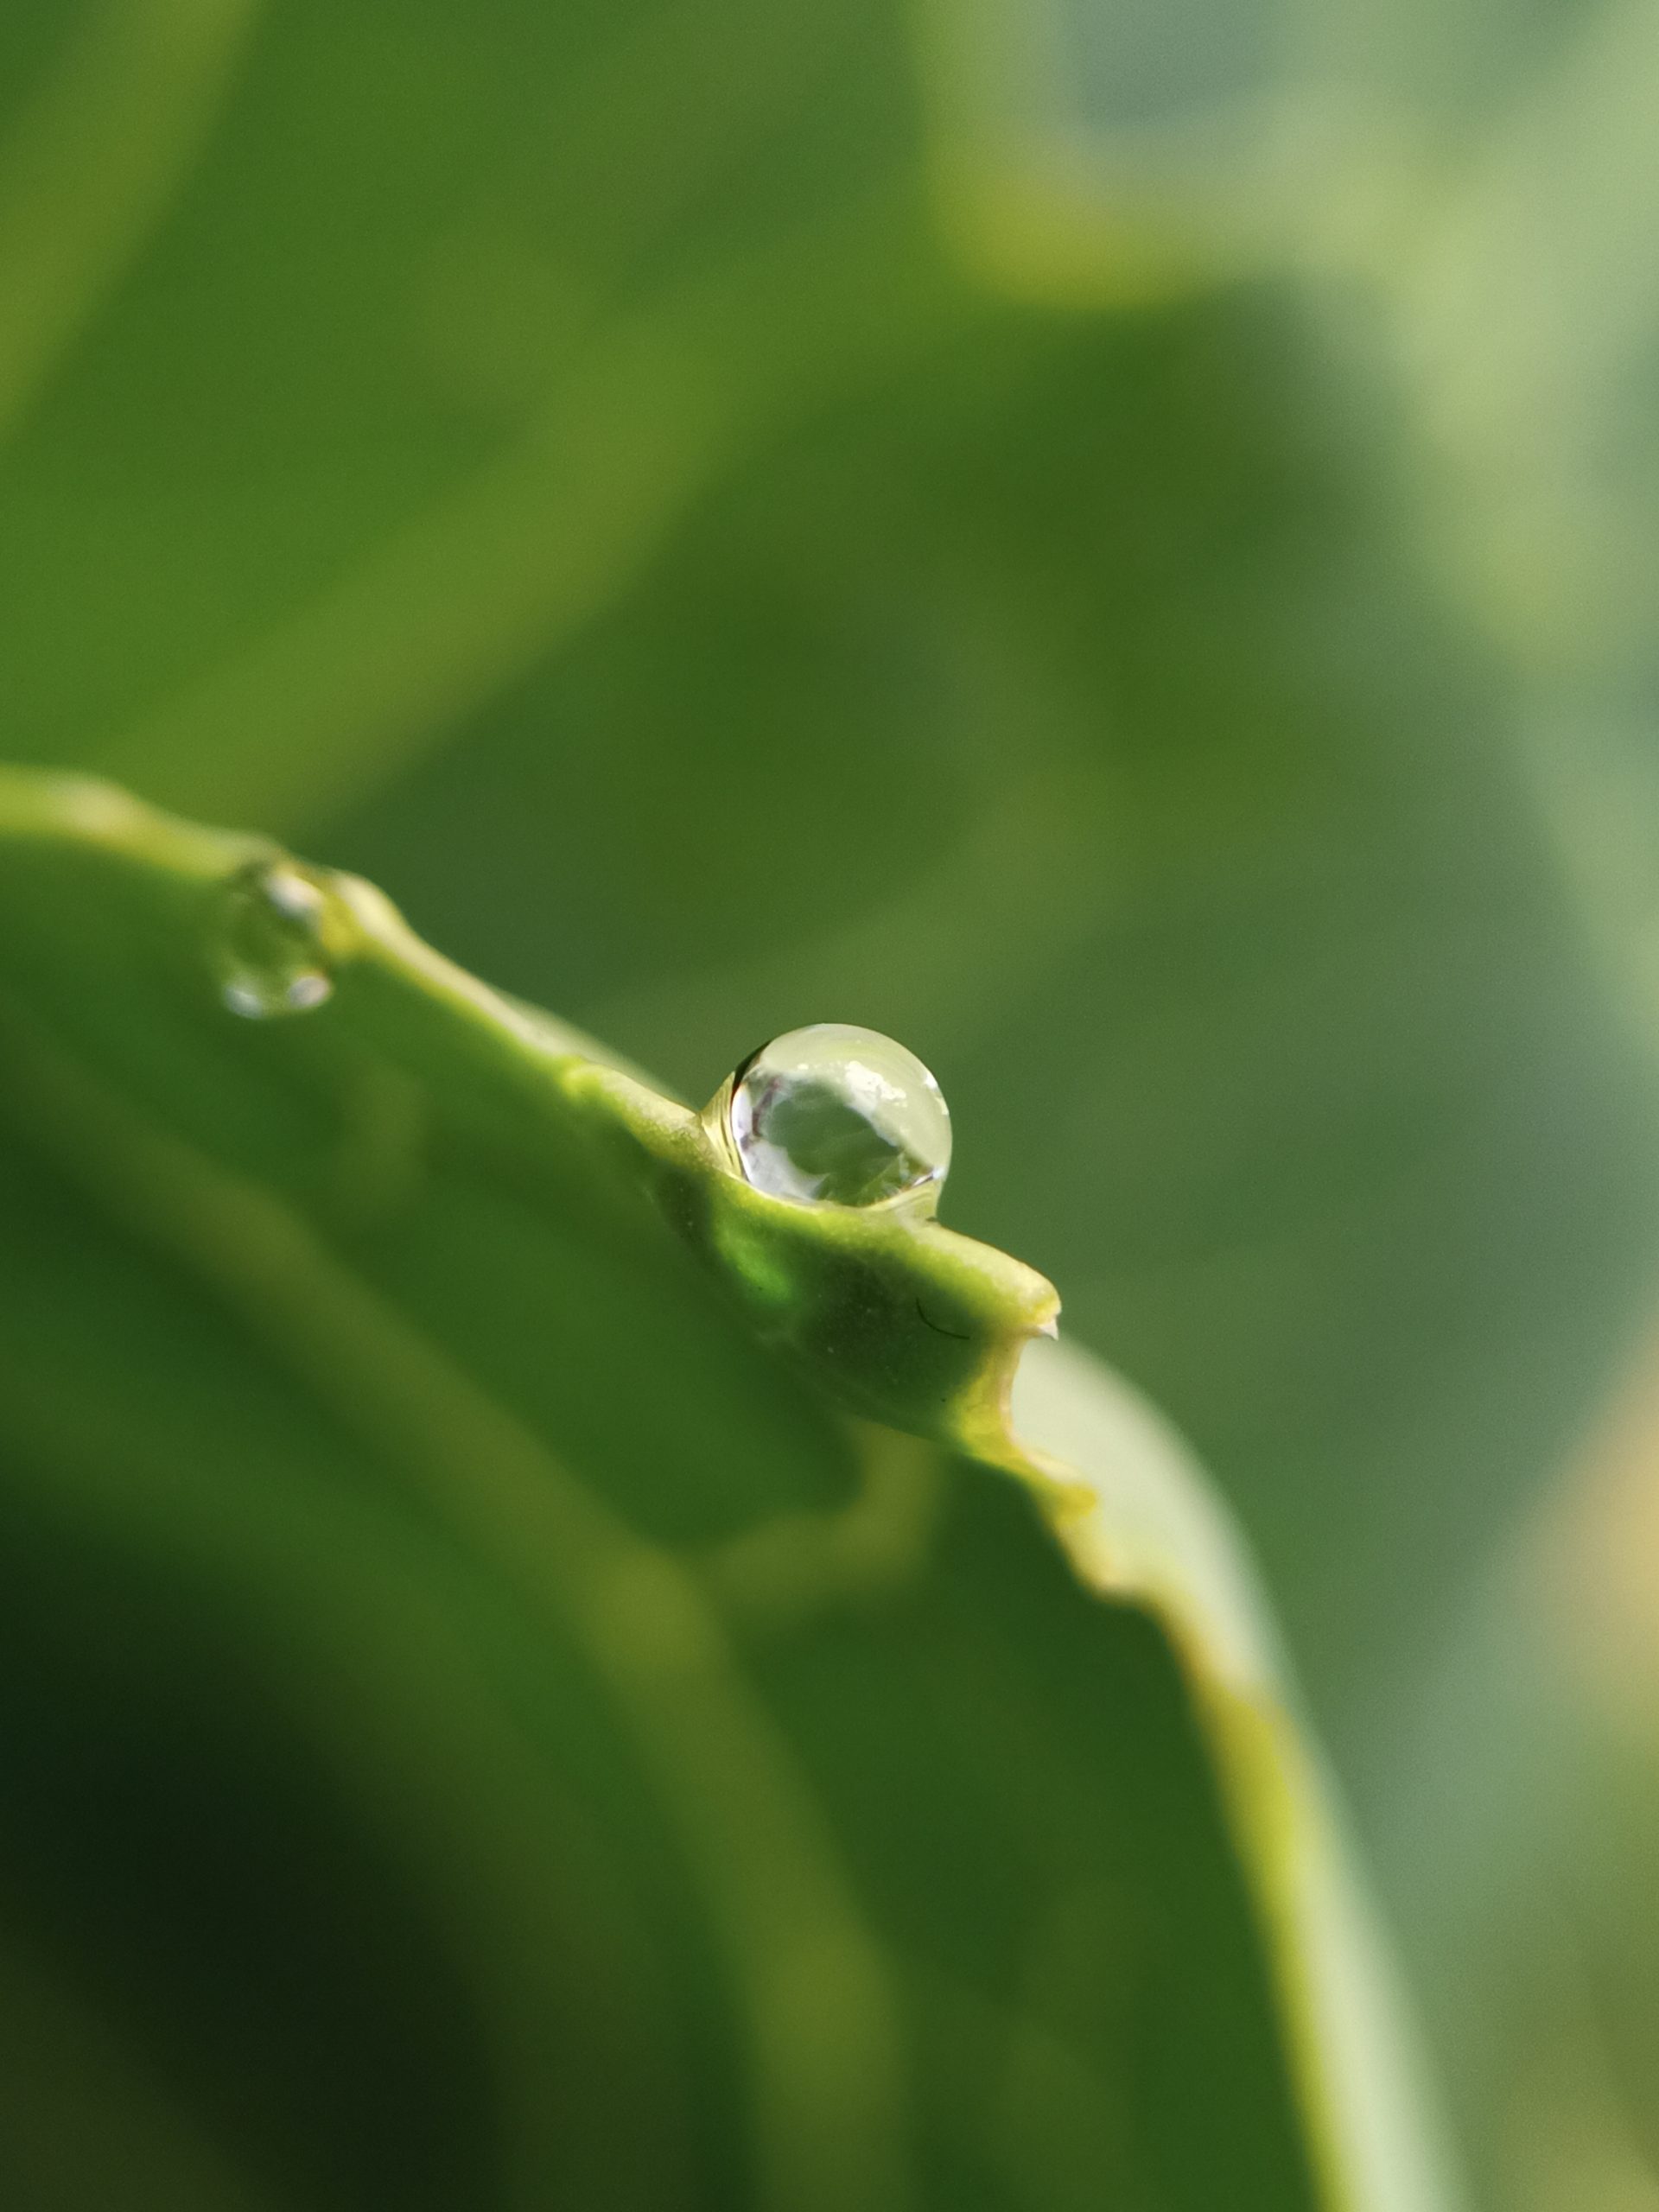 Waterdrop on plant leaf